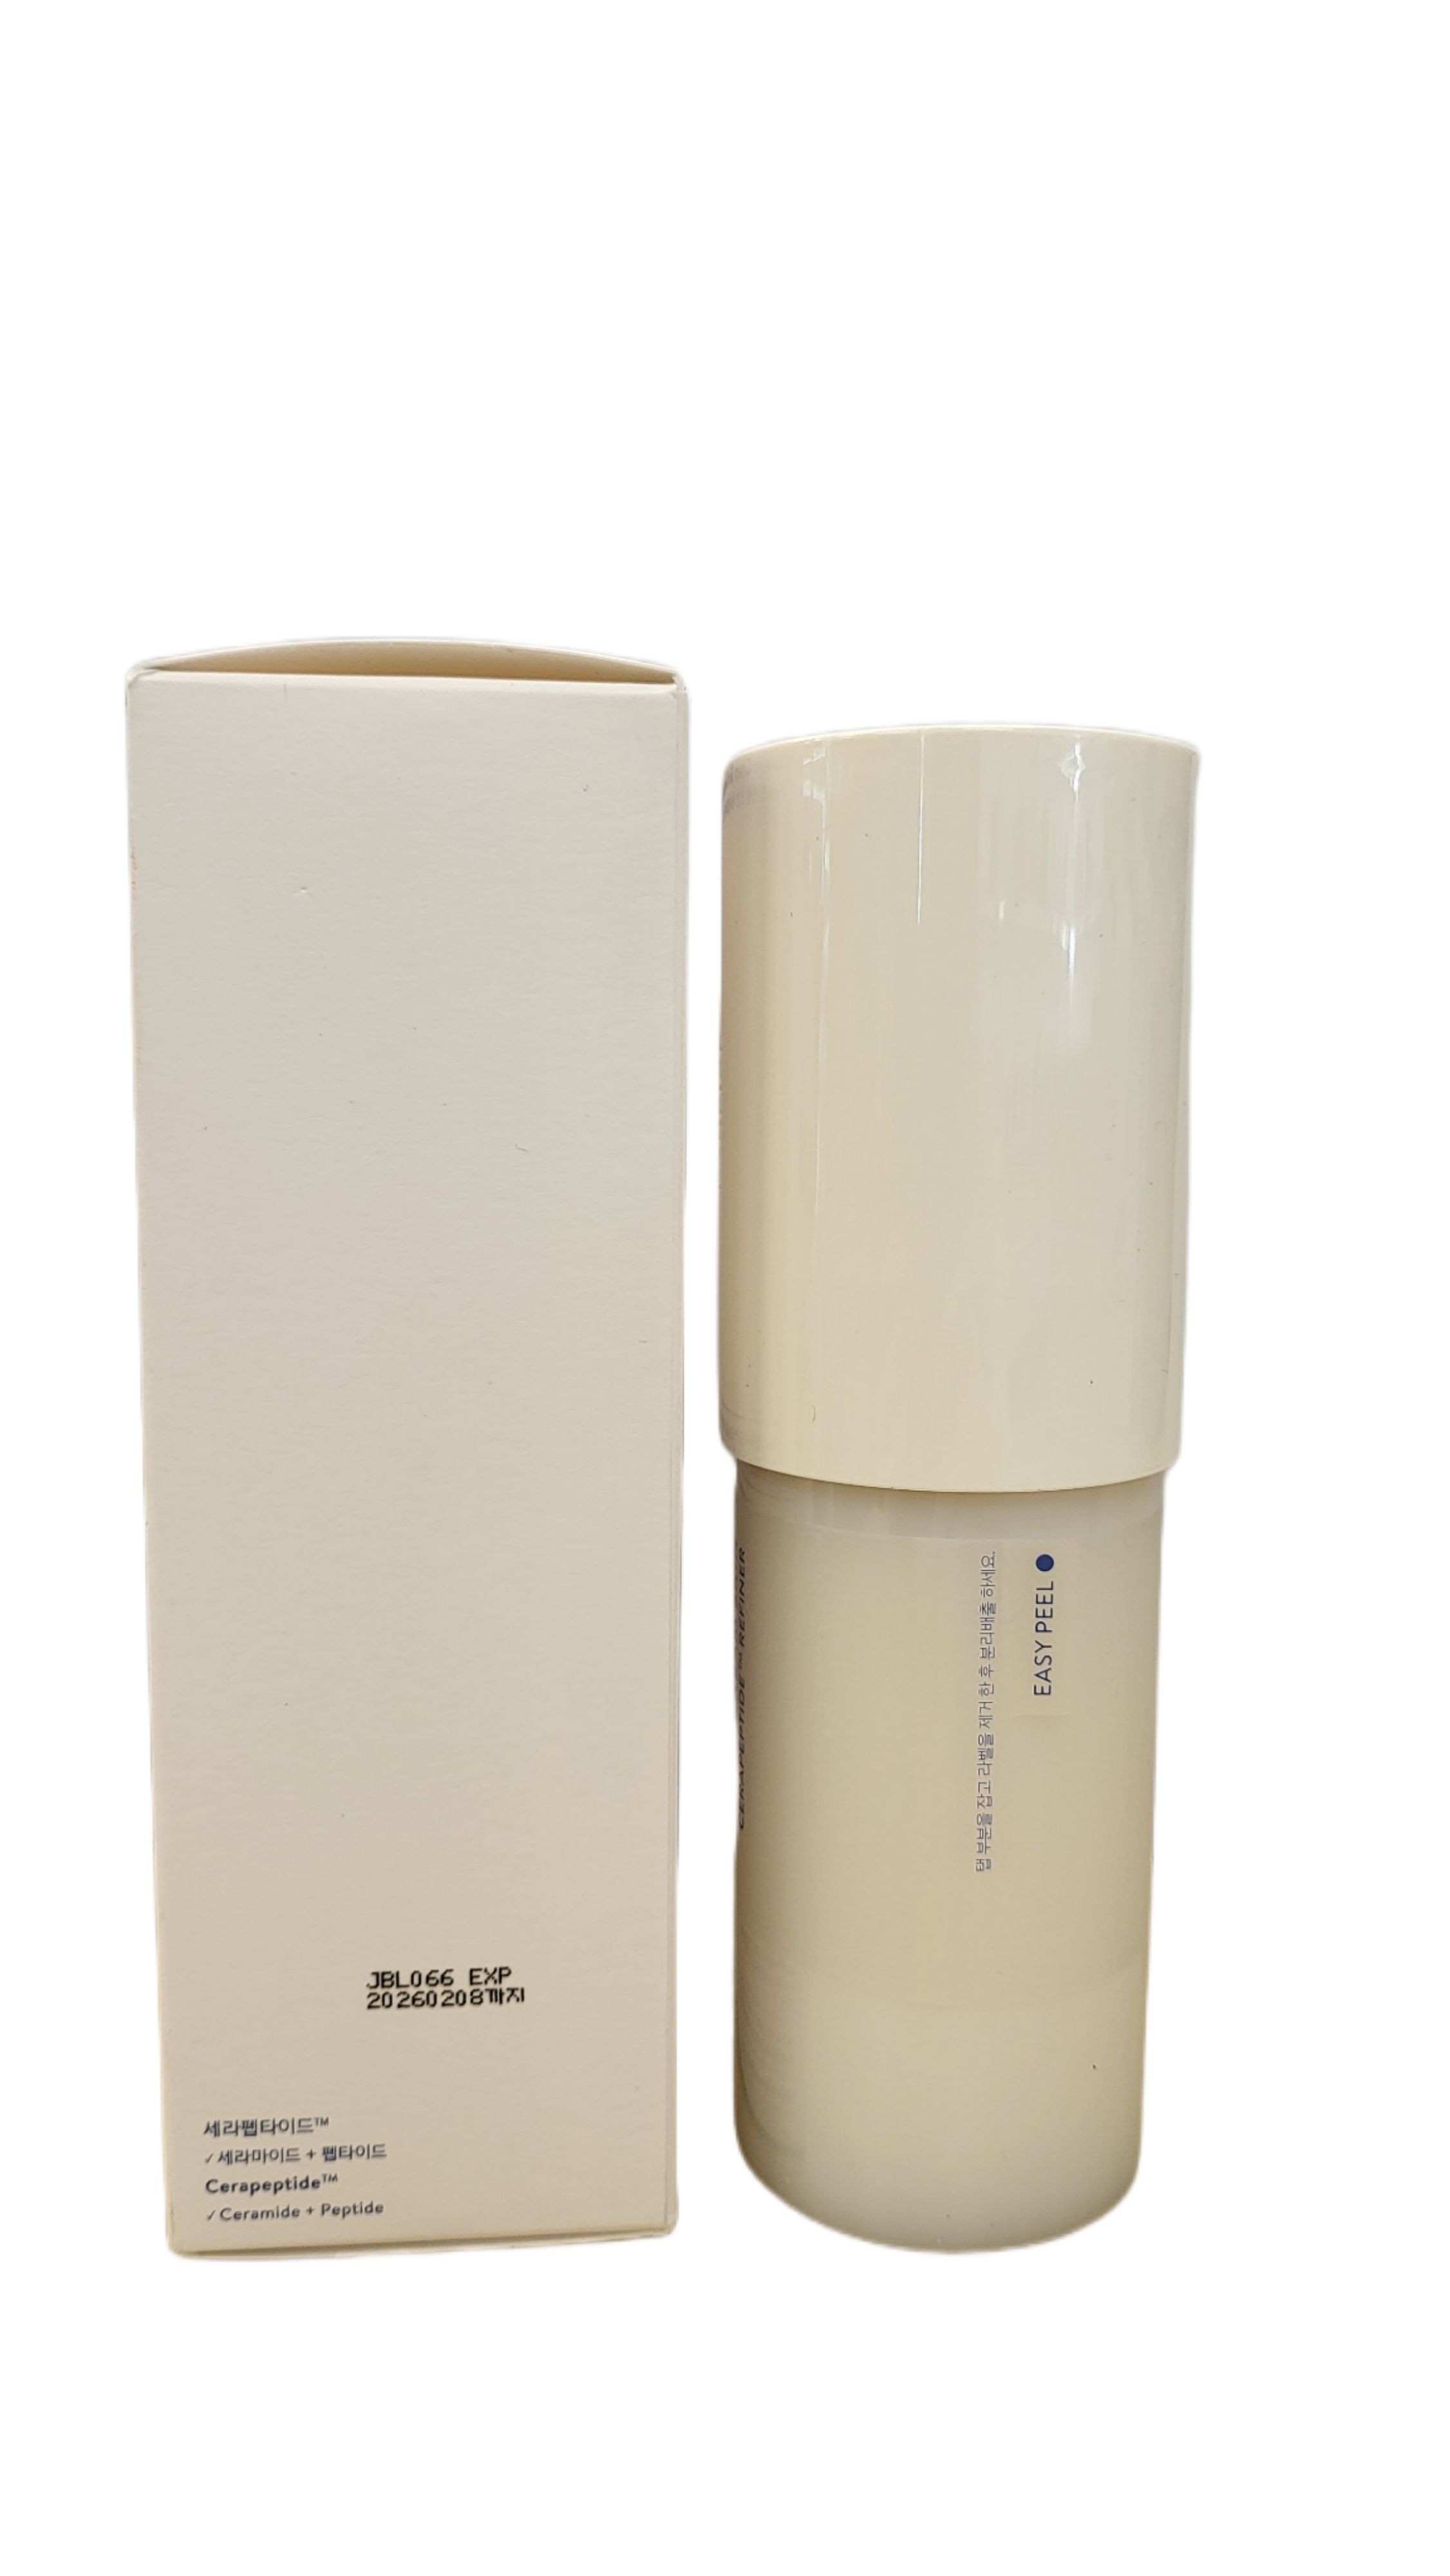 LANEIGE Cream Skin Cerapeptide Refiner 170ml 